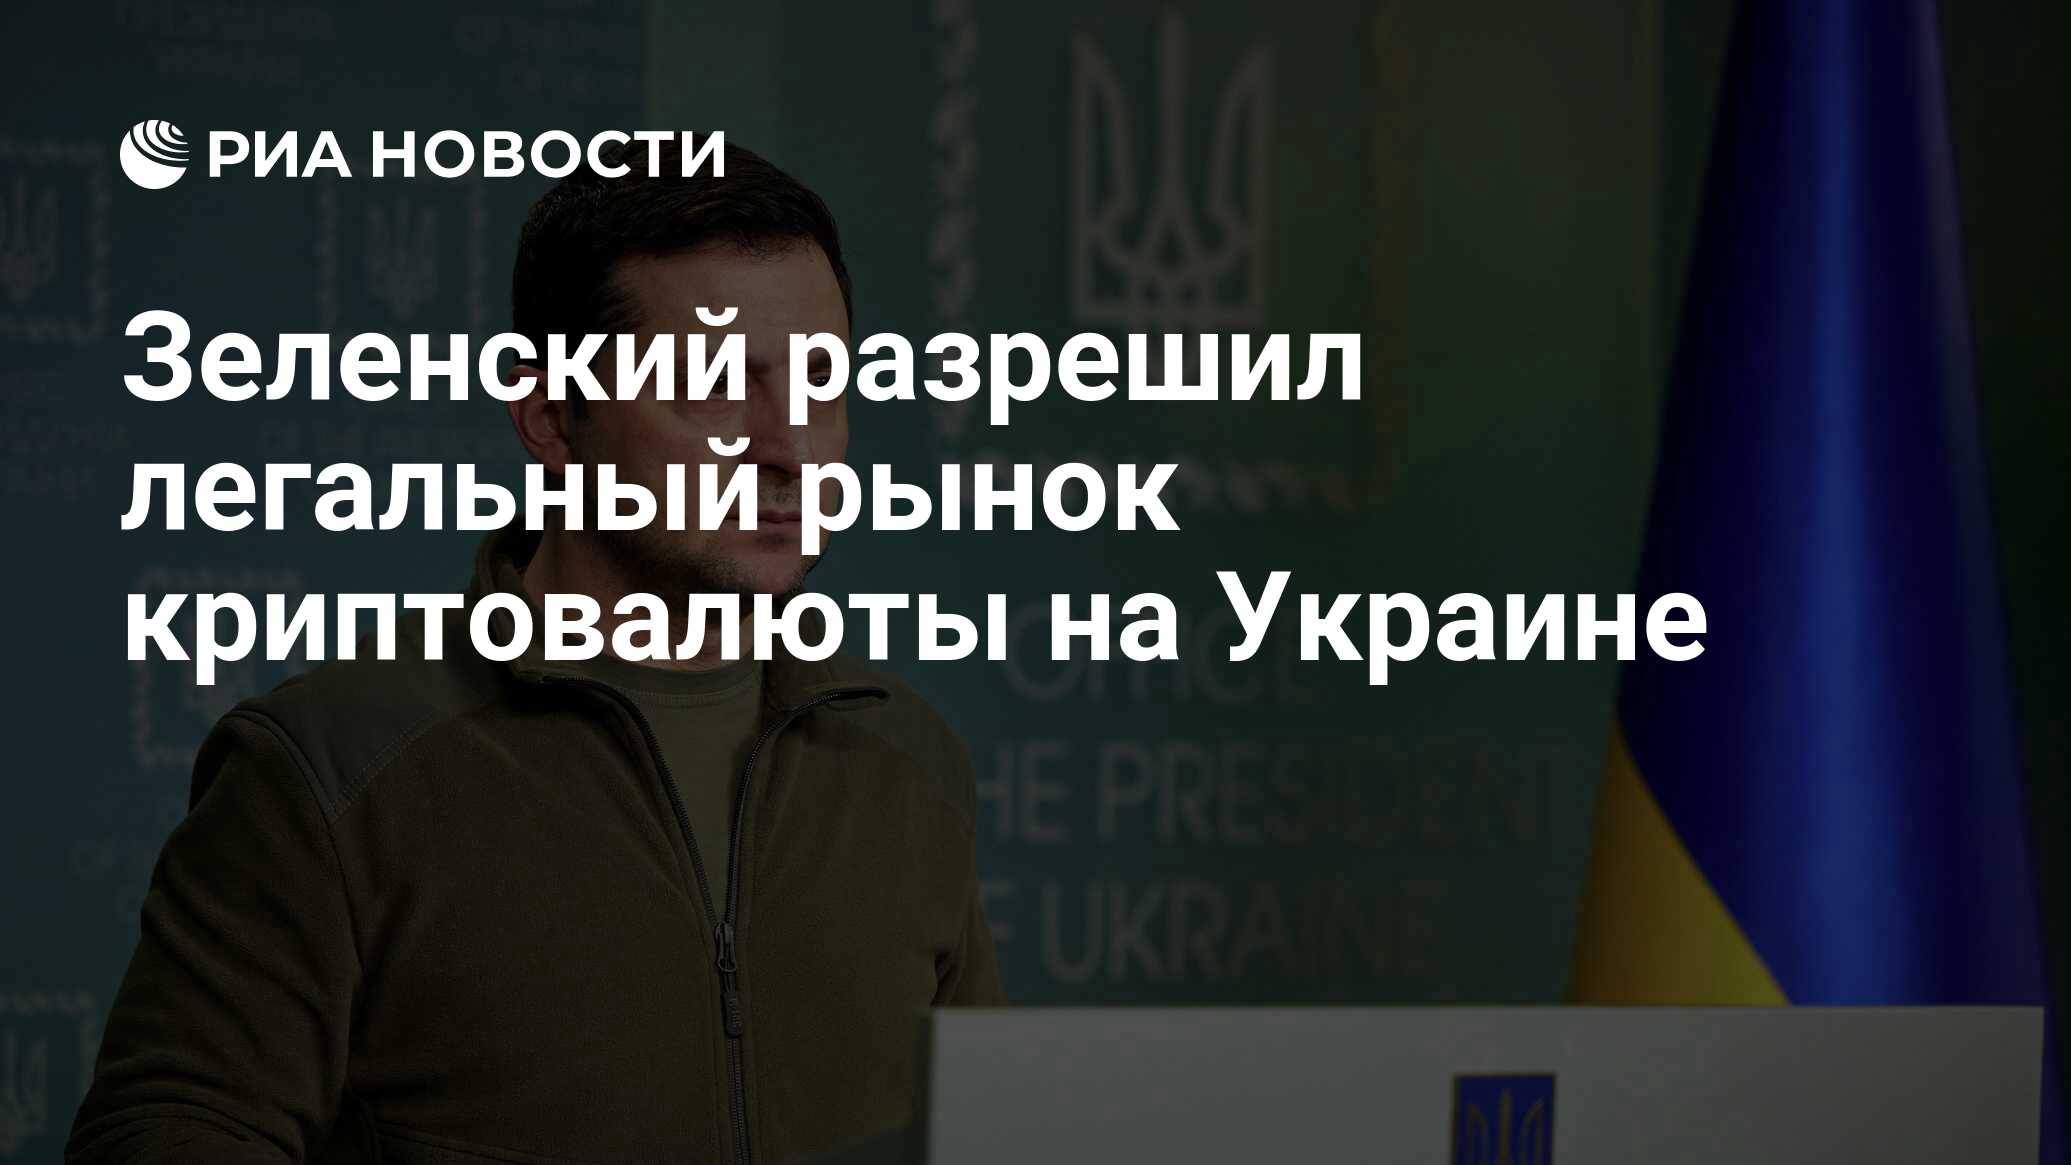 Зеленский разрешил легальный рынок криптовалюты на Украине